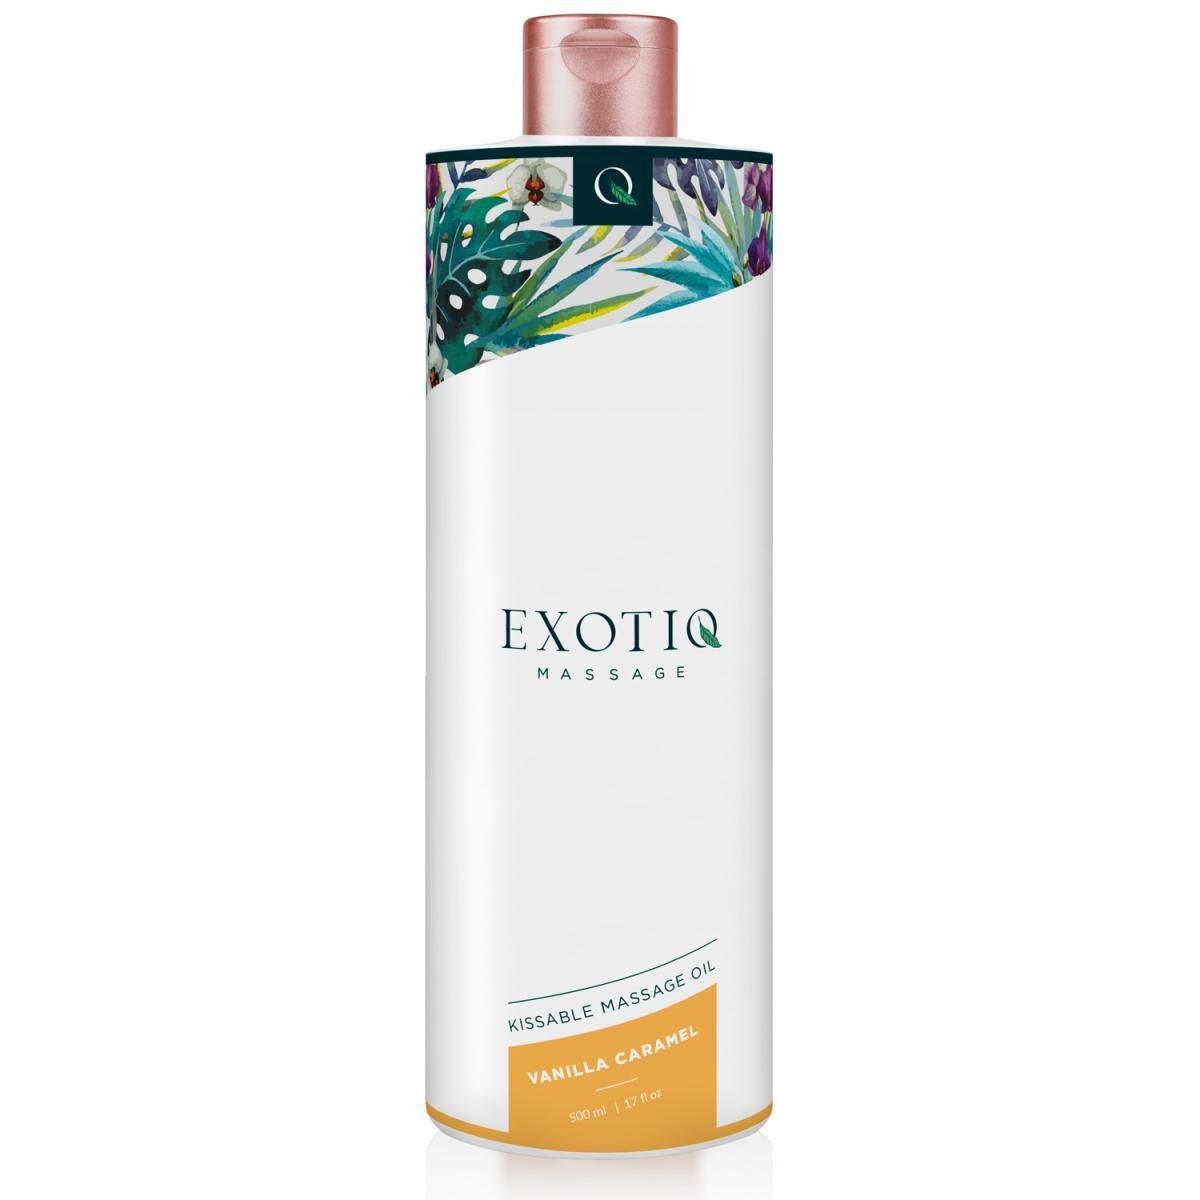 Exotiq Massageöl Vanilla Caramel (500 ml) - vergleichen und günstig kaufen